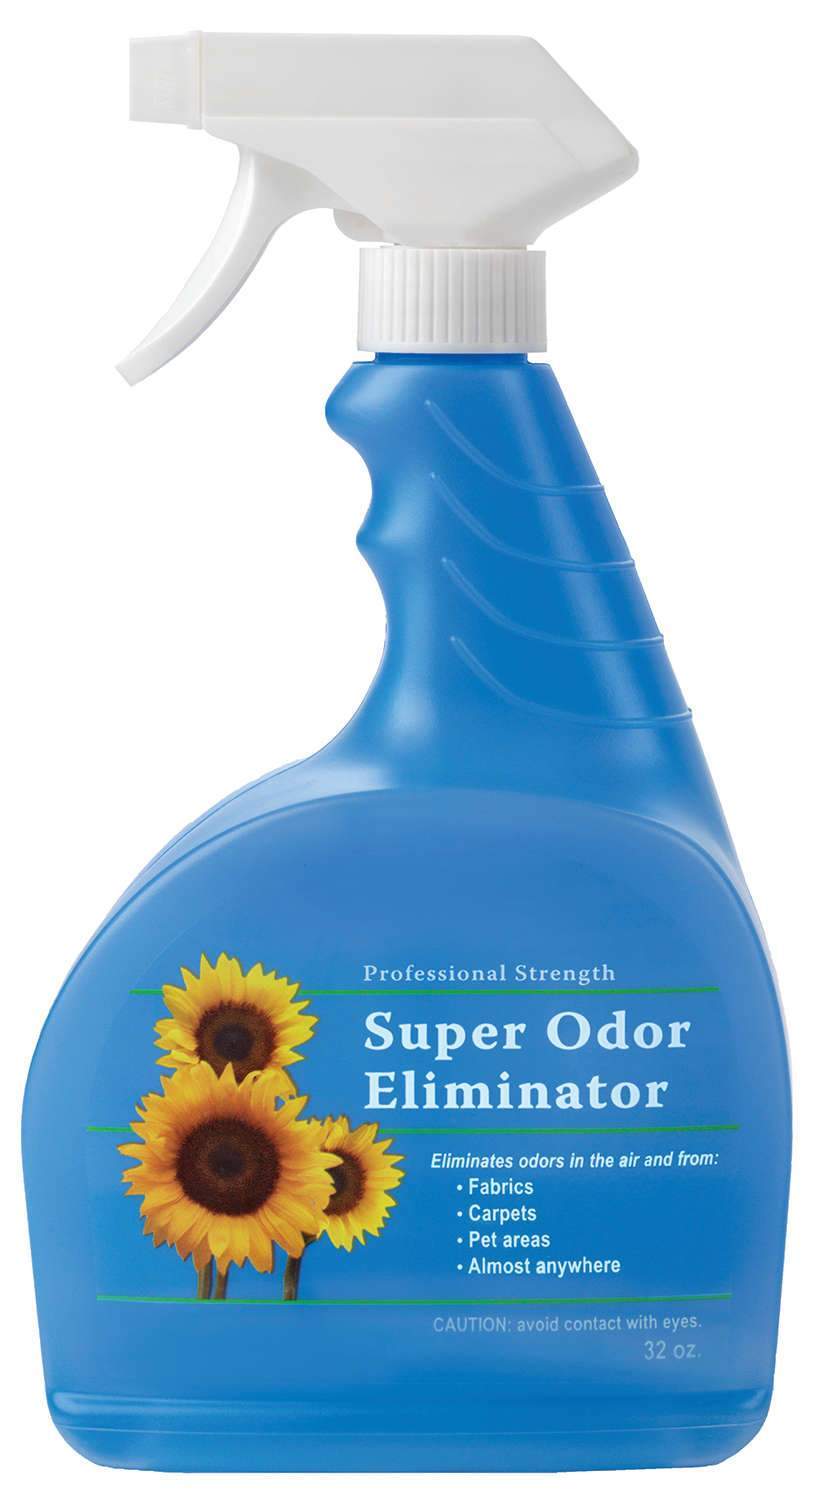 Super Odor Eliminator Liquid Air Freshener, Fresh Linen, 32 oz. Bottle, Box of 6